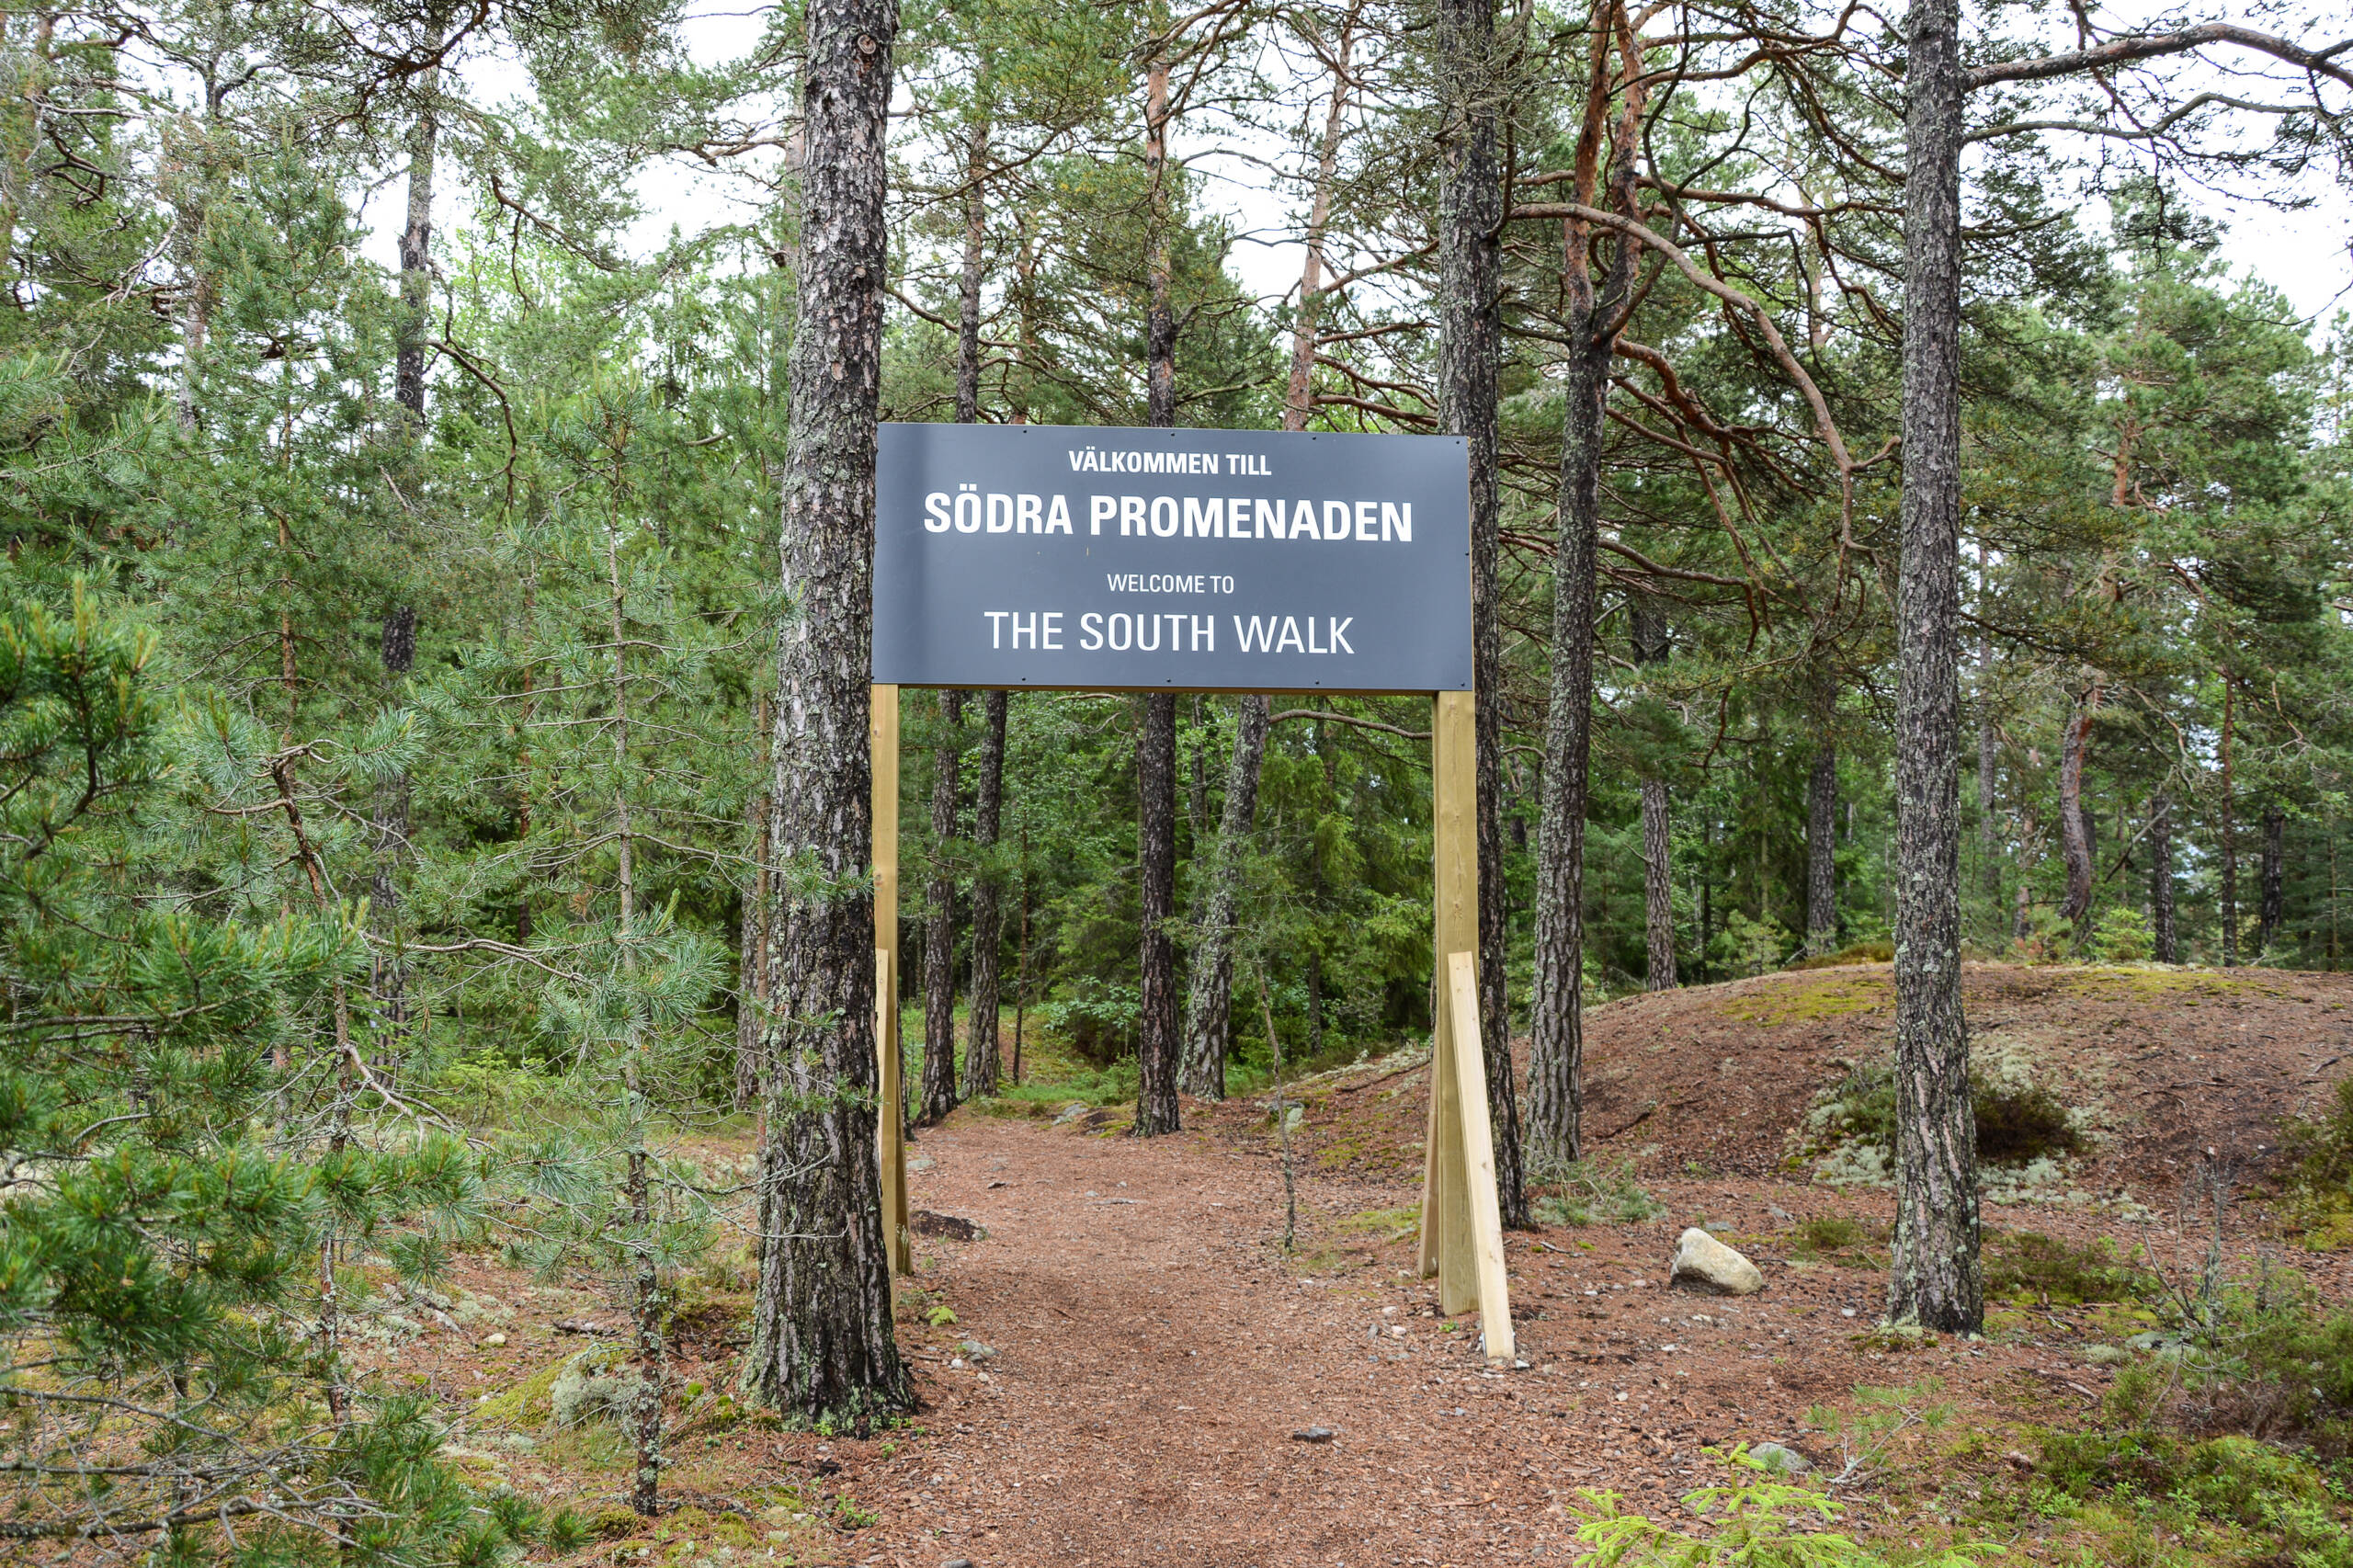 Ein großes Willkommensschild weist auf einen Rundweg durch den Wald der Halbinsel Hålluden hin.